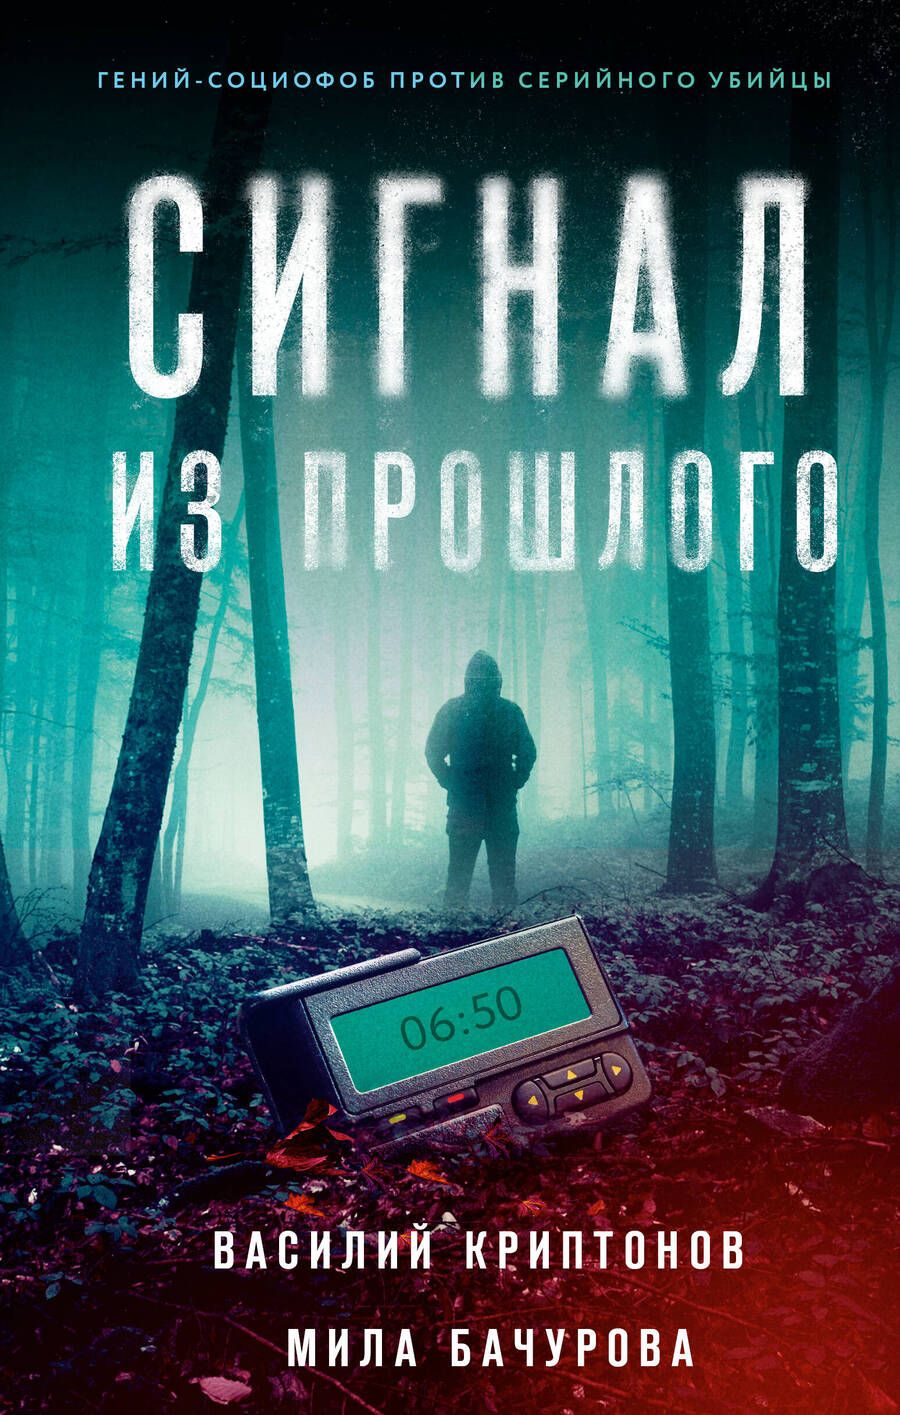 Обложка книги "Криптонов, Бачурова: Сигнал из прошлого"